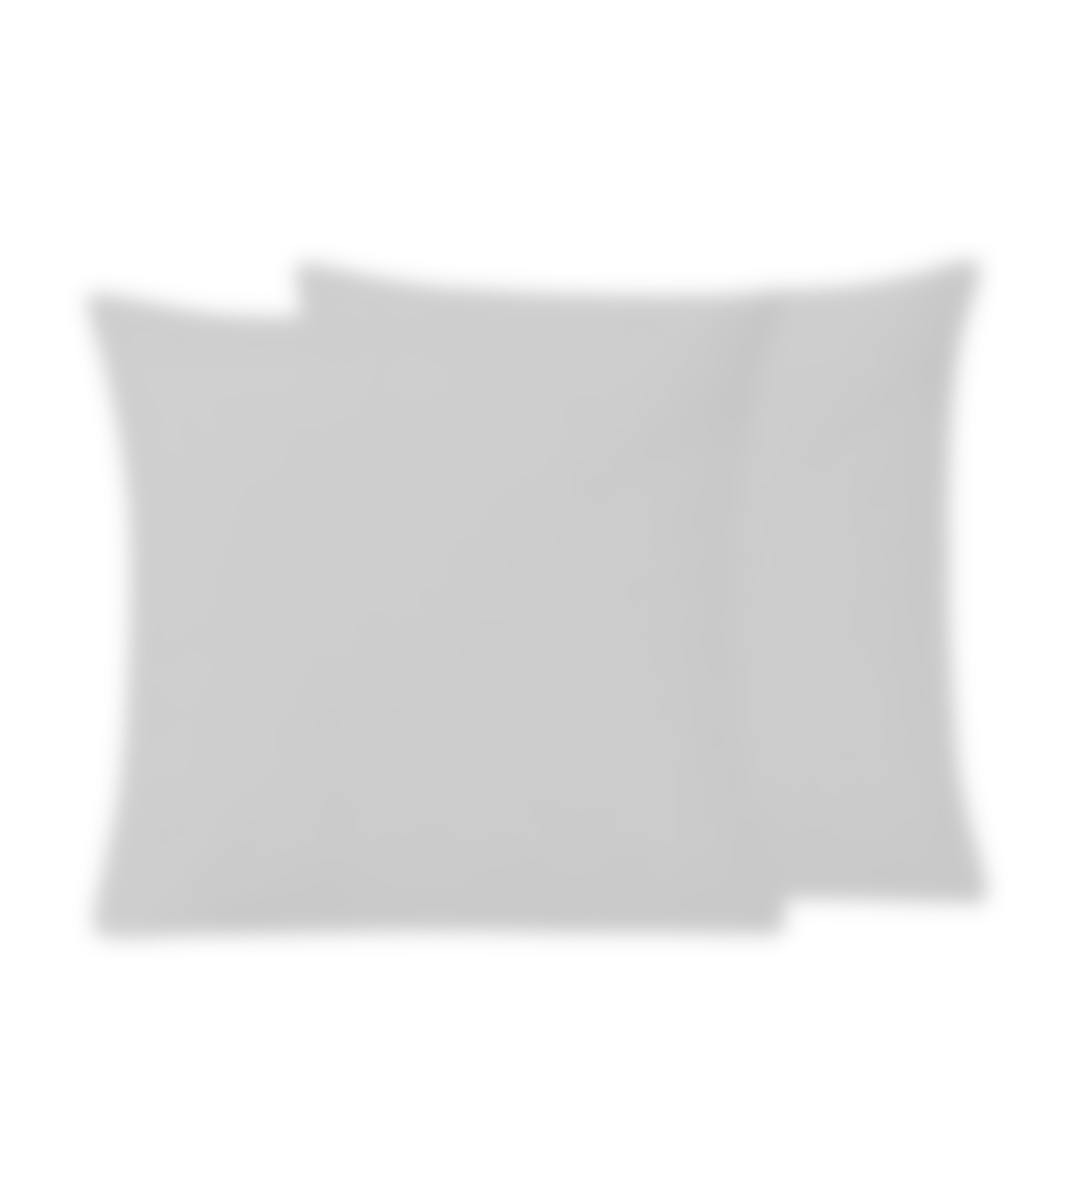 Sleepnight taie d'oreiller gris percale set de 2 50 x 70 cm